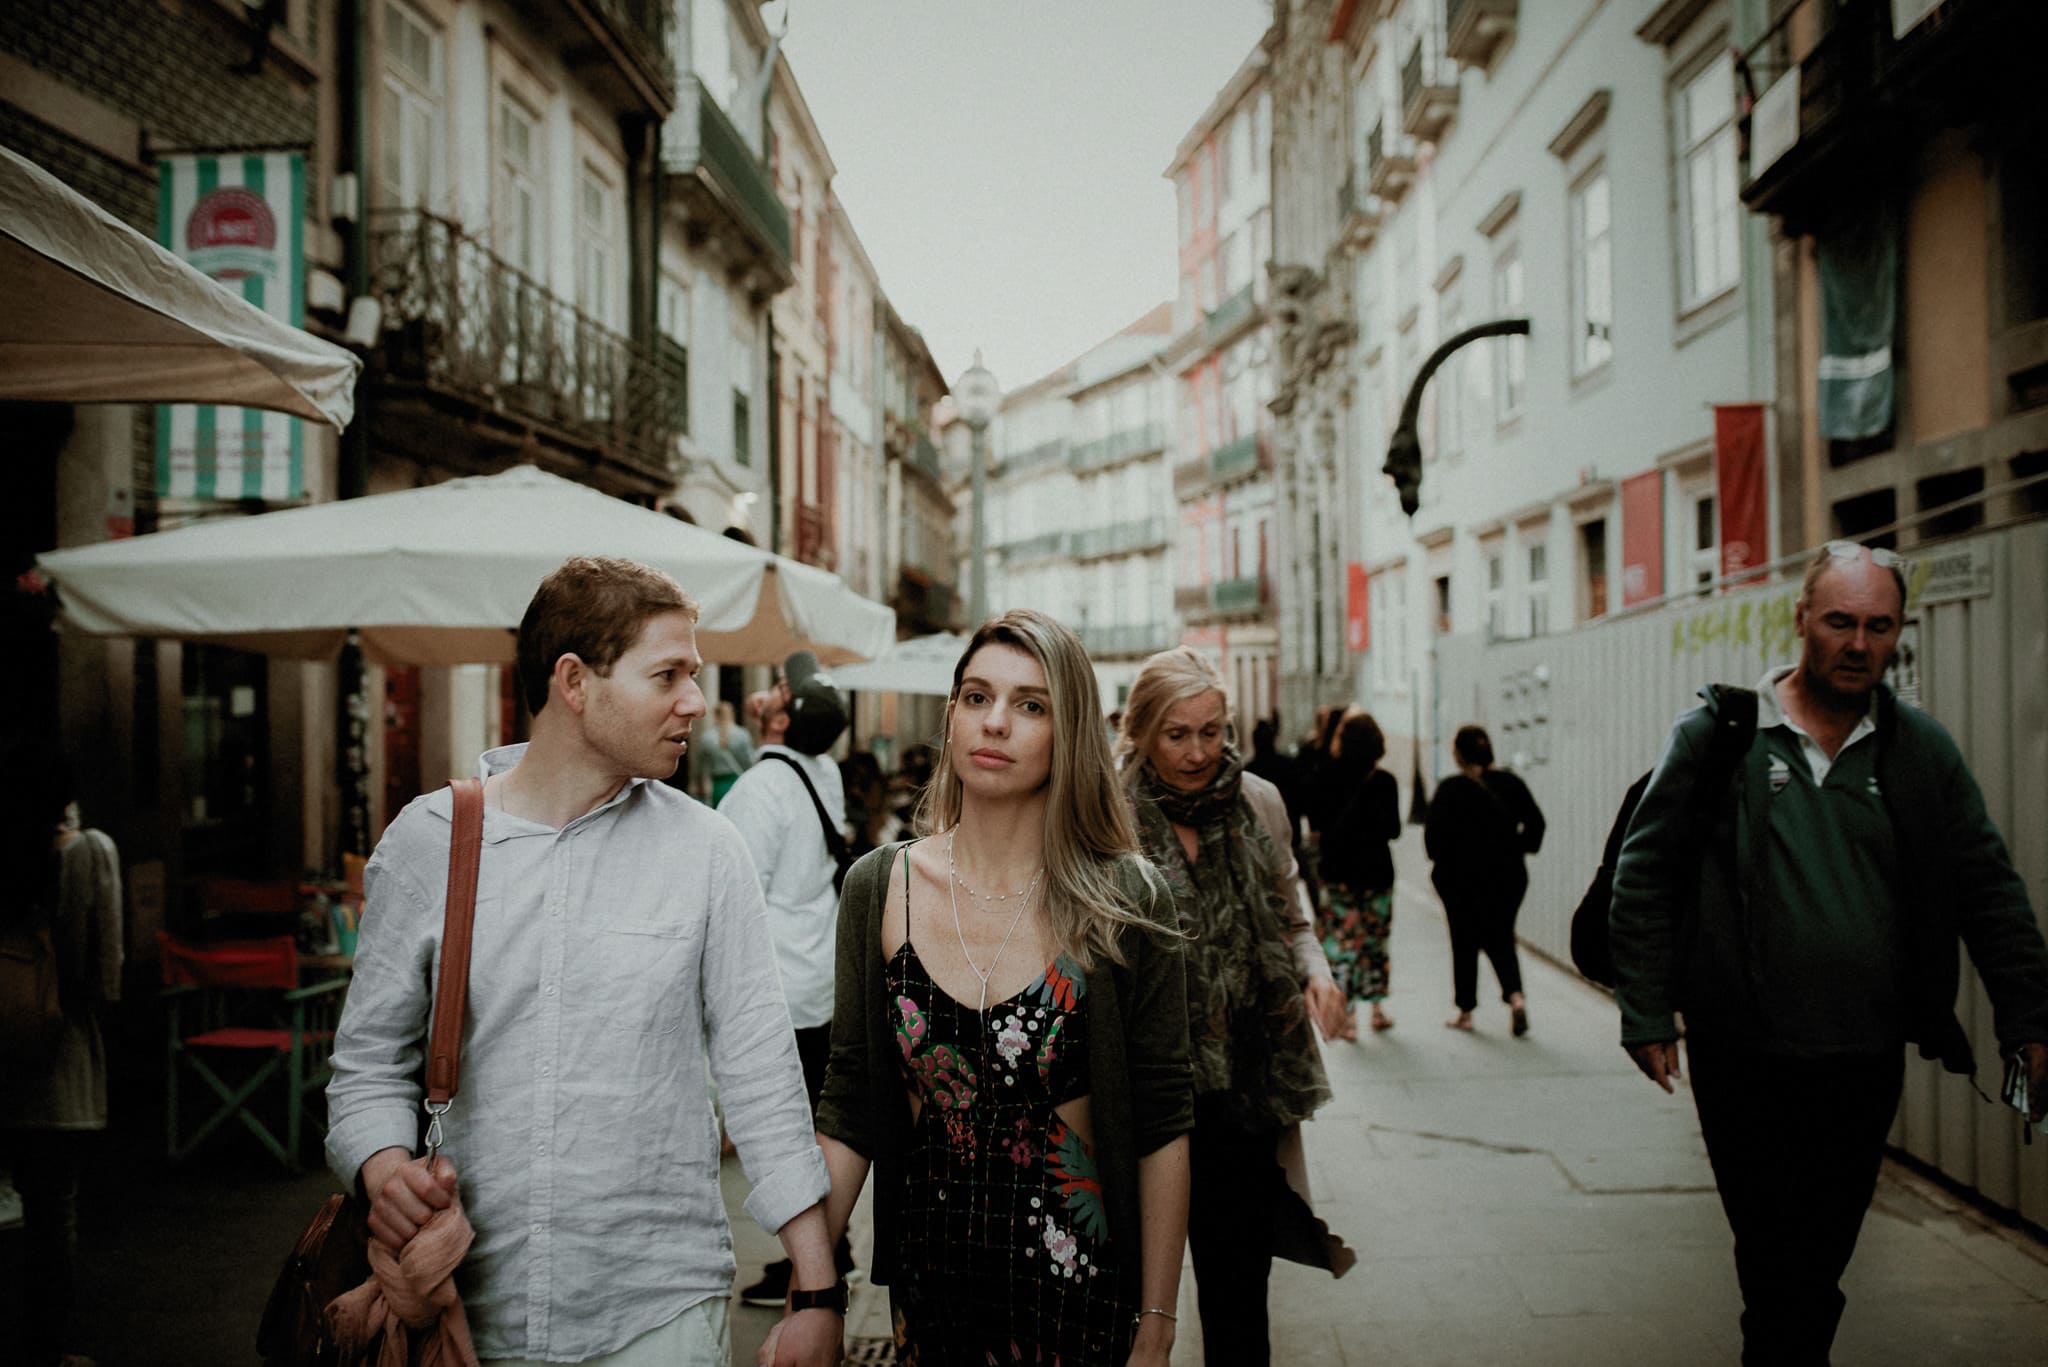 Exploring the Porto centre on Rua das Flores